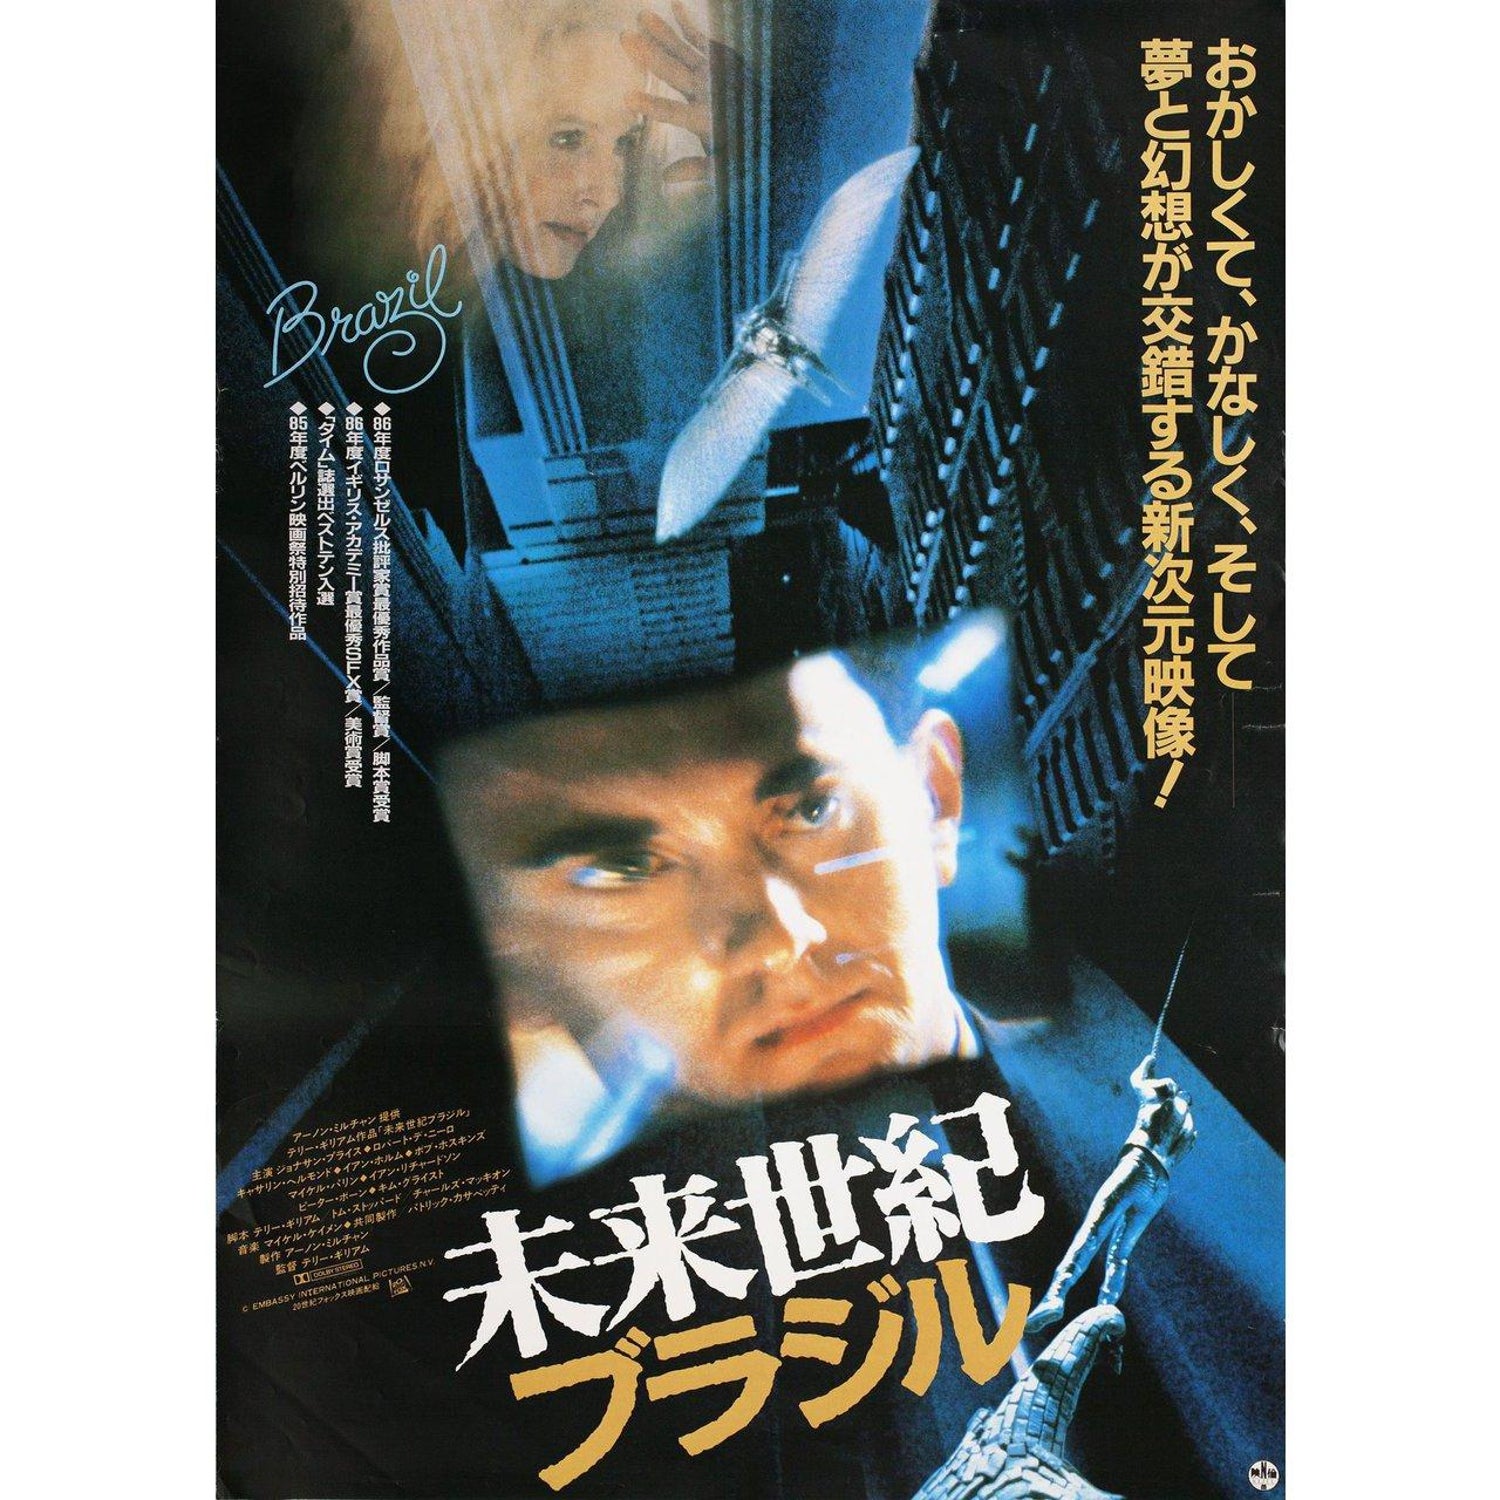 Brazil 1986 Japanese B2 Film Poster